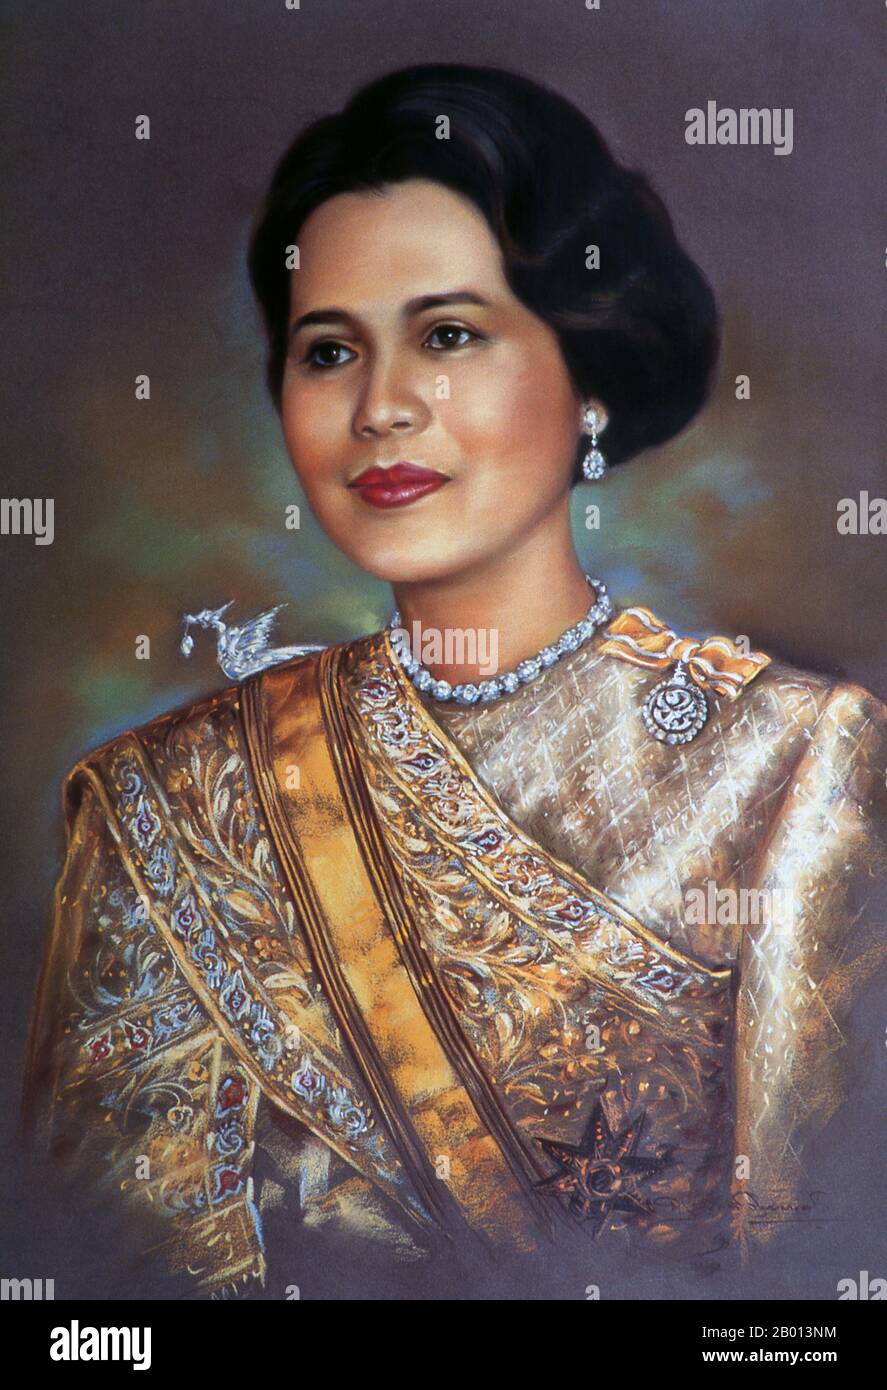 Thailand: Königin Sirikit (12. August 1932 - ), Gemahlin von Bhumibol Adulyadej (Rama IX), König von Thailand. Öl auf Leinwand Gemälde, c. 1950er bis 1960er Jahre. Somdet Phra Nang Chao Sirikit Phra Borommarachininat, die am 12. August 1932 geborene Mutter Rajawongse Sirikit Kitiyakara, ist die Gemahlin von Bhumibol Adulyadej, König (Rama IX) von Thailand. Sie ist die zweite Regentin der Königin von Thailand (die erste Regentin war Königin Saovabha Bongsri von Siam, später Königin Sri Patcharindra, die Königin Mutter). Am 21. Juli 2012 erlitt sie einen Schlaganfall und wurde seitdem nicht mehr in der Öffentlichkeit gesehen. Stockfoto